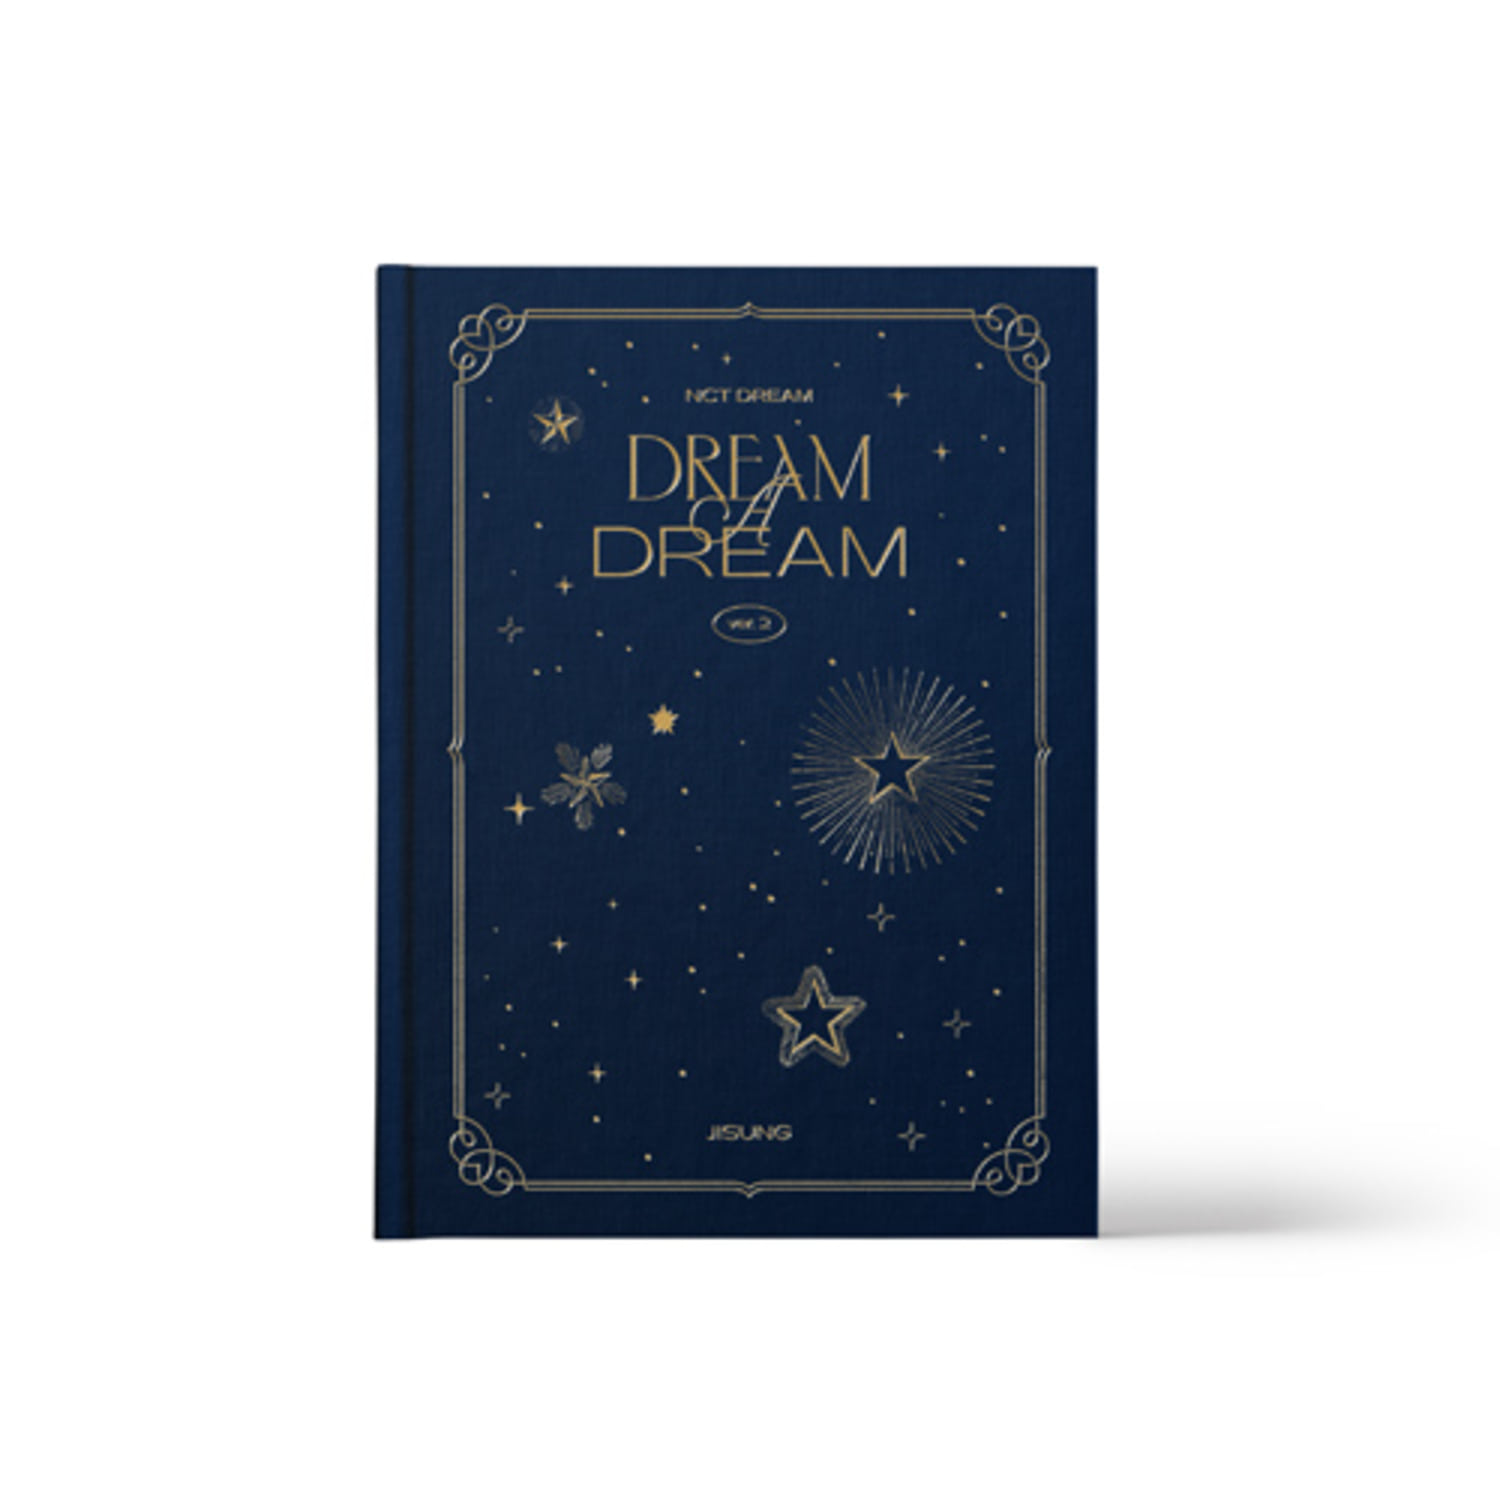 [교환반품불가]NCT DREAM  - (JISUNG) NCT DREAM PHOTO BOOK  [DREAM A DREAM ver.2]